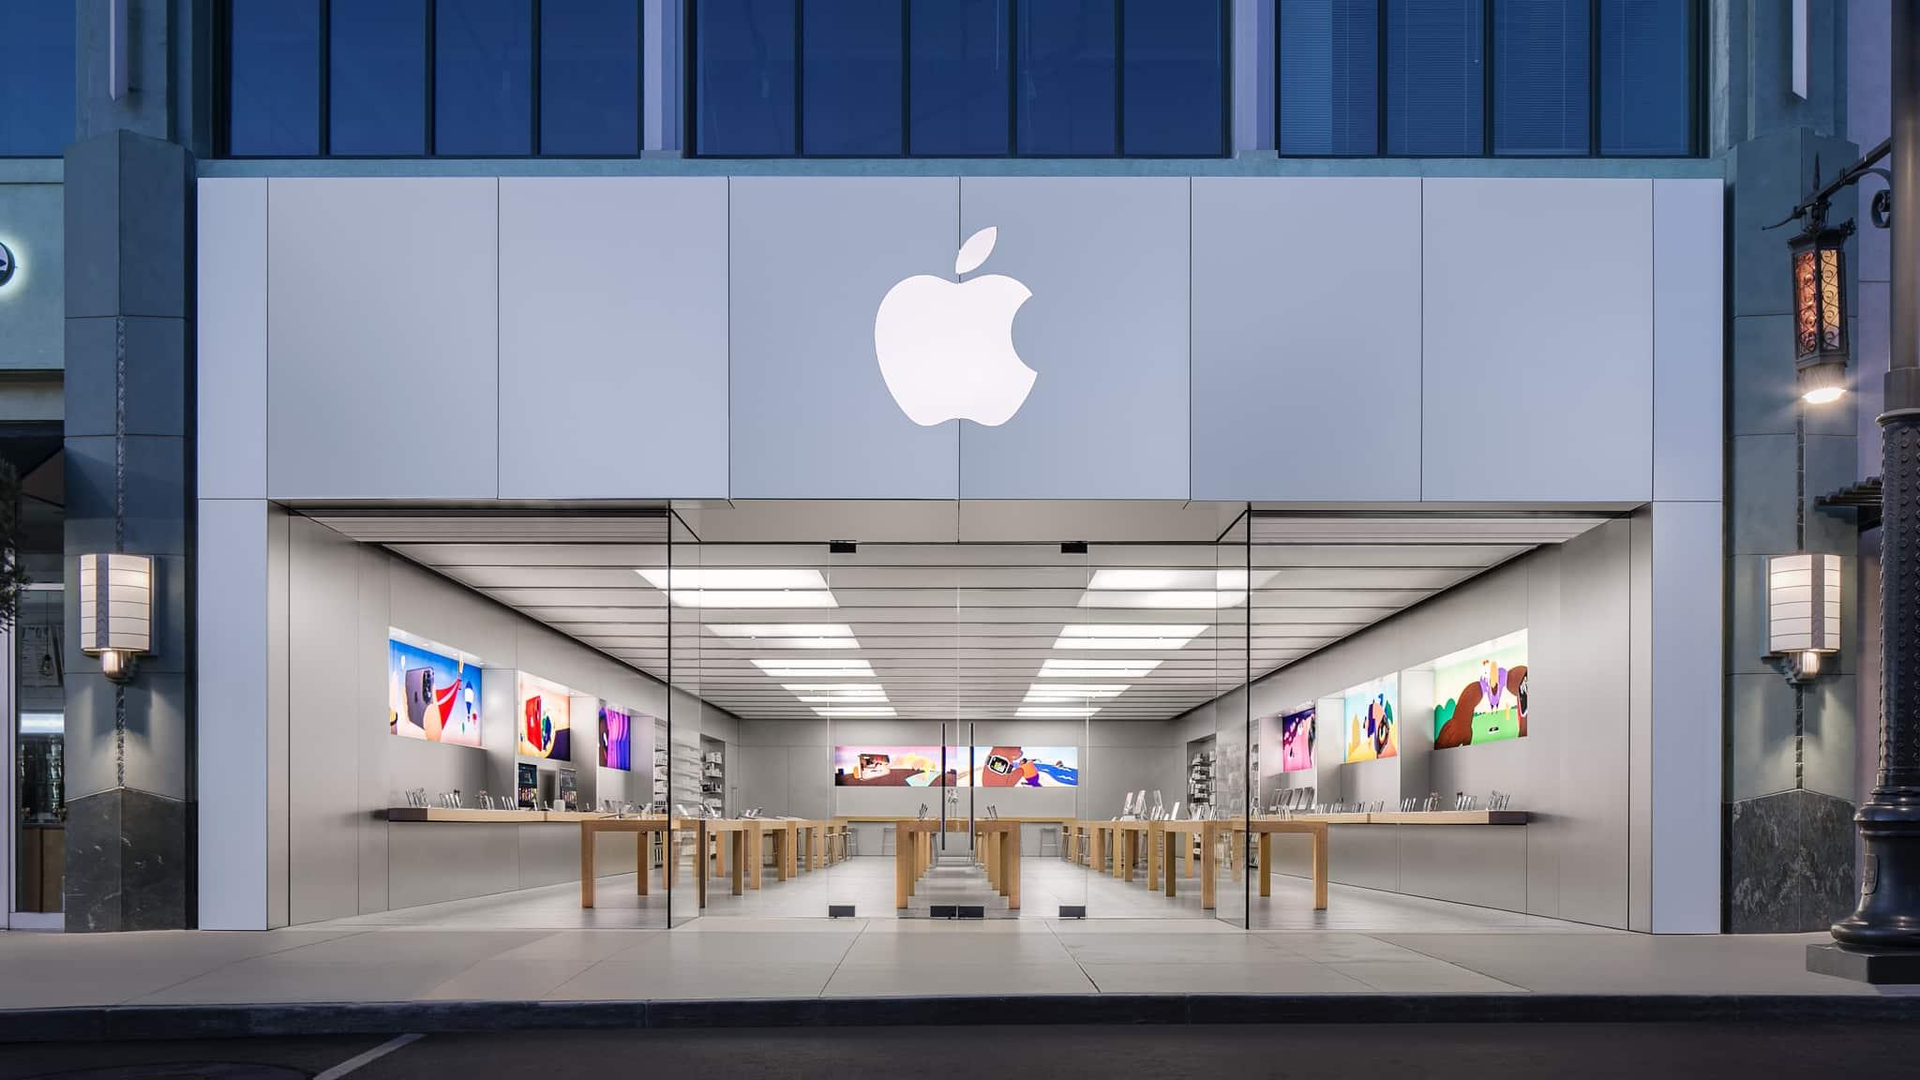 Apple Store mở cửa hàng trực tuyến tại Việt Nam, FPT Shop lên tiếng: Tự tin dịch vụ, giá cả cạnh tranh nhất thị trường - Ảnh 1.